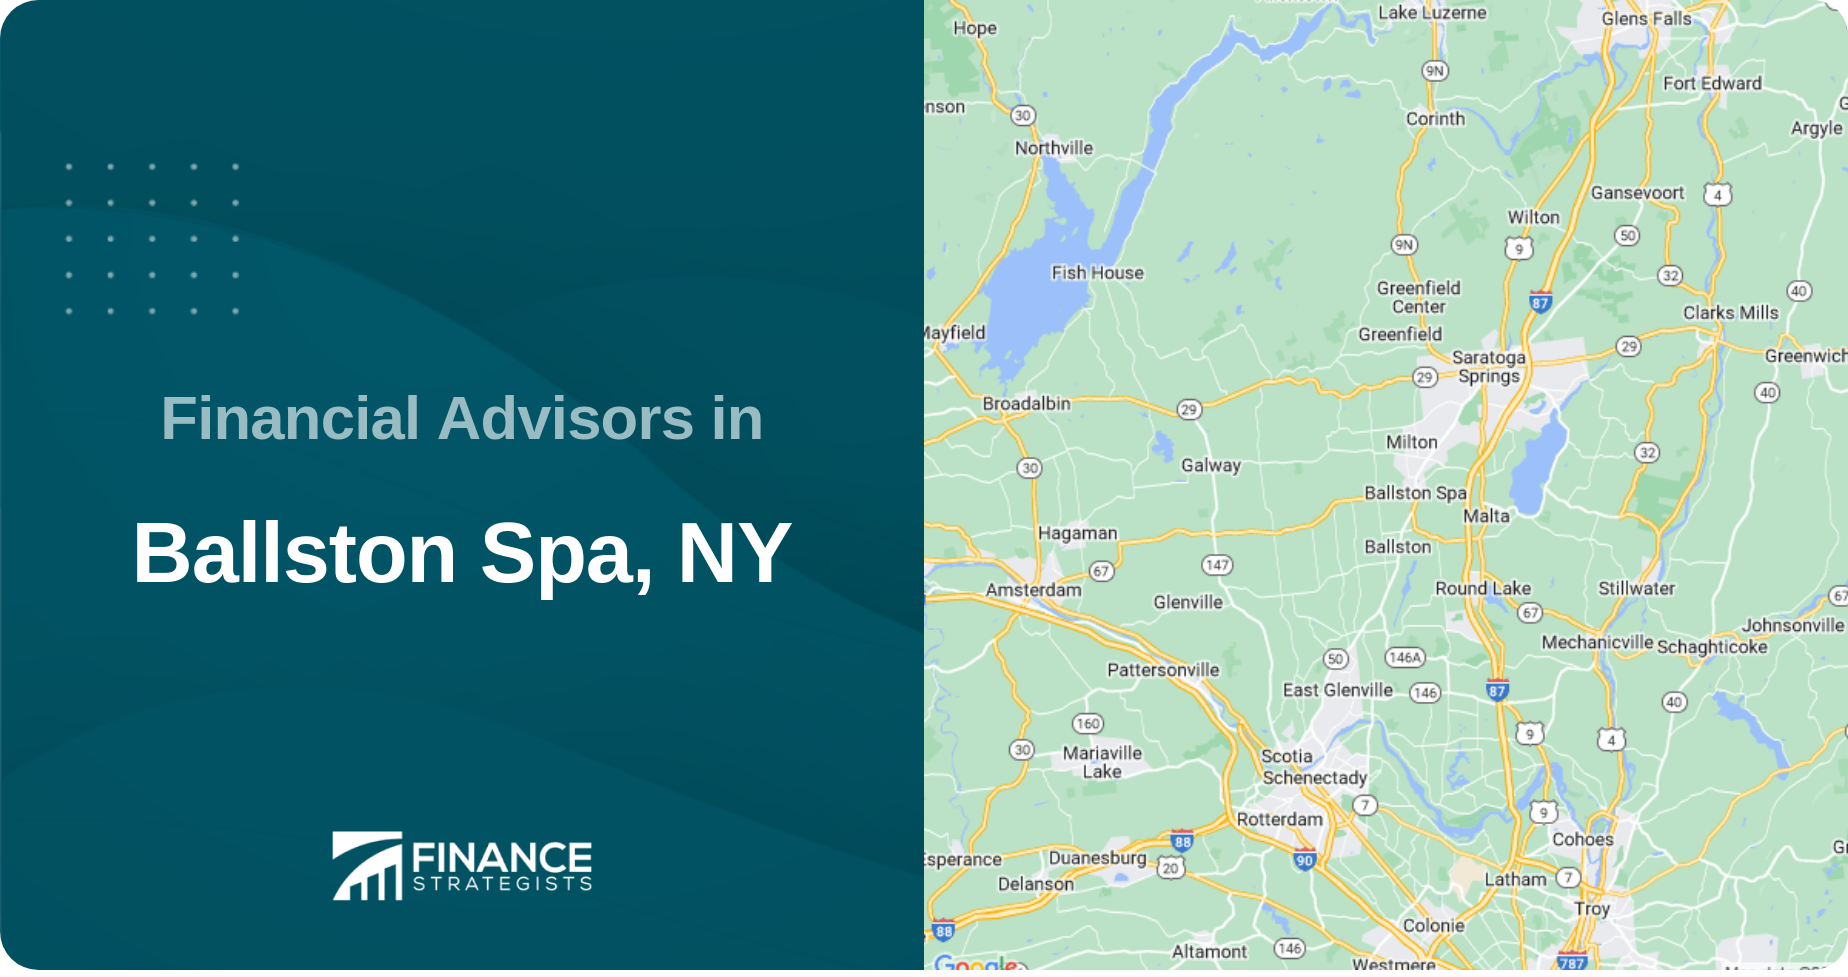 Financial Advisors in Ballston Spa, NY